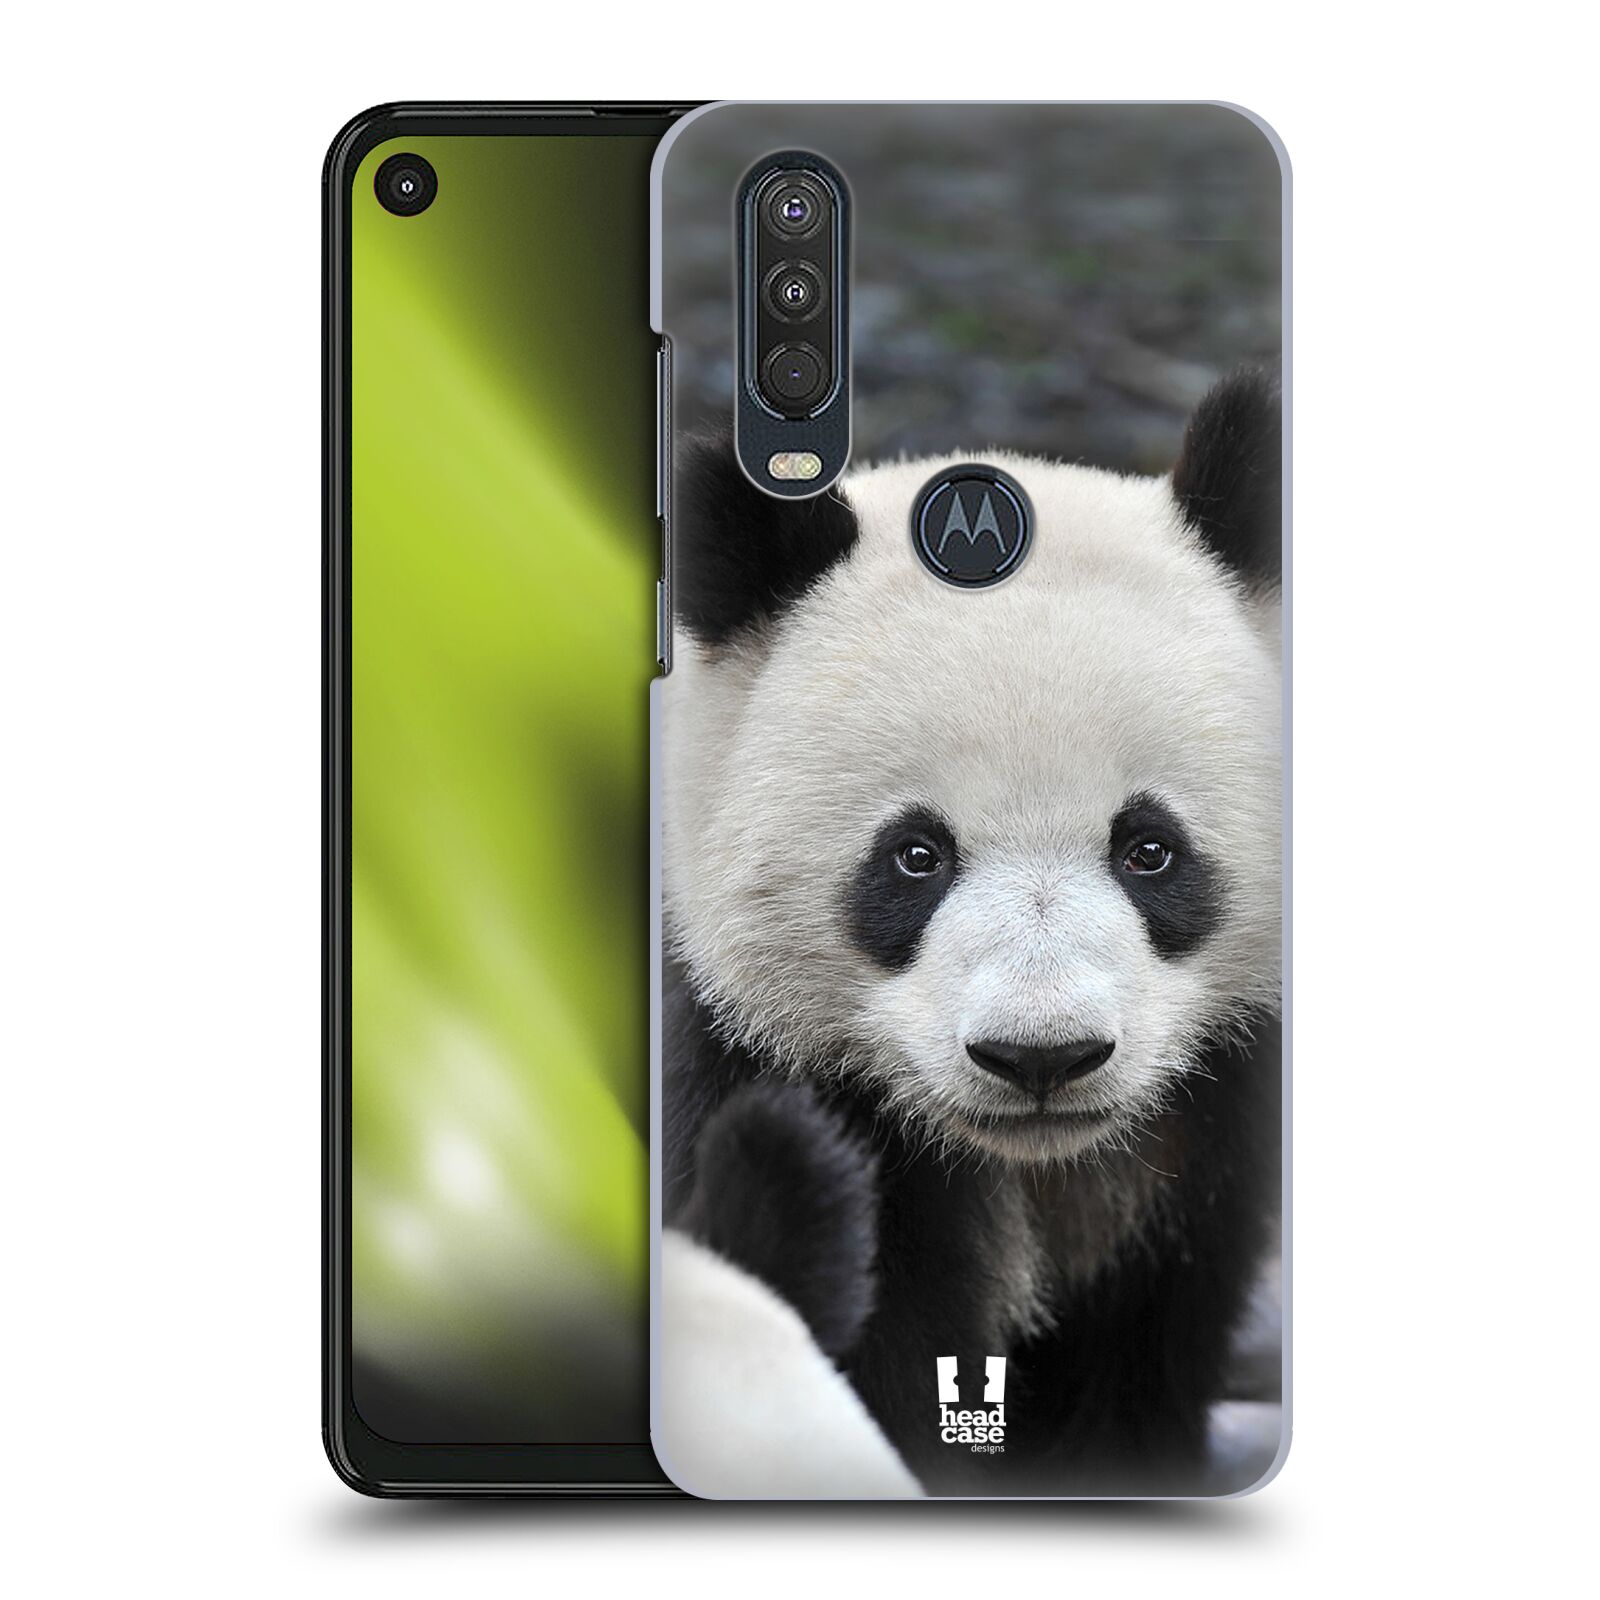 Zadní obal pro mobil Motorola One Action - HEAD CASE - Svět zvířat medvěd panda